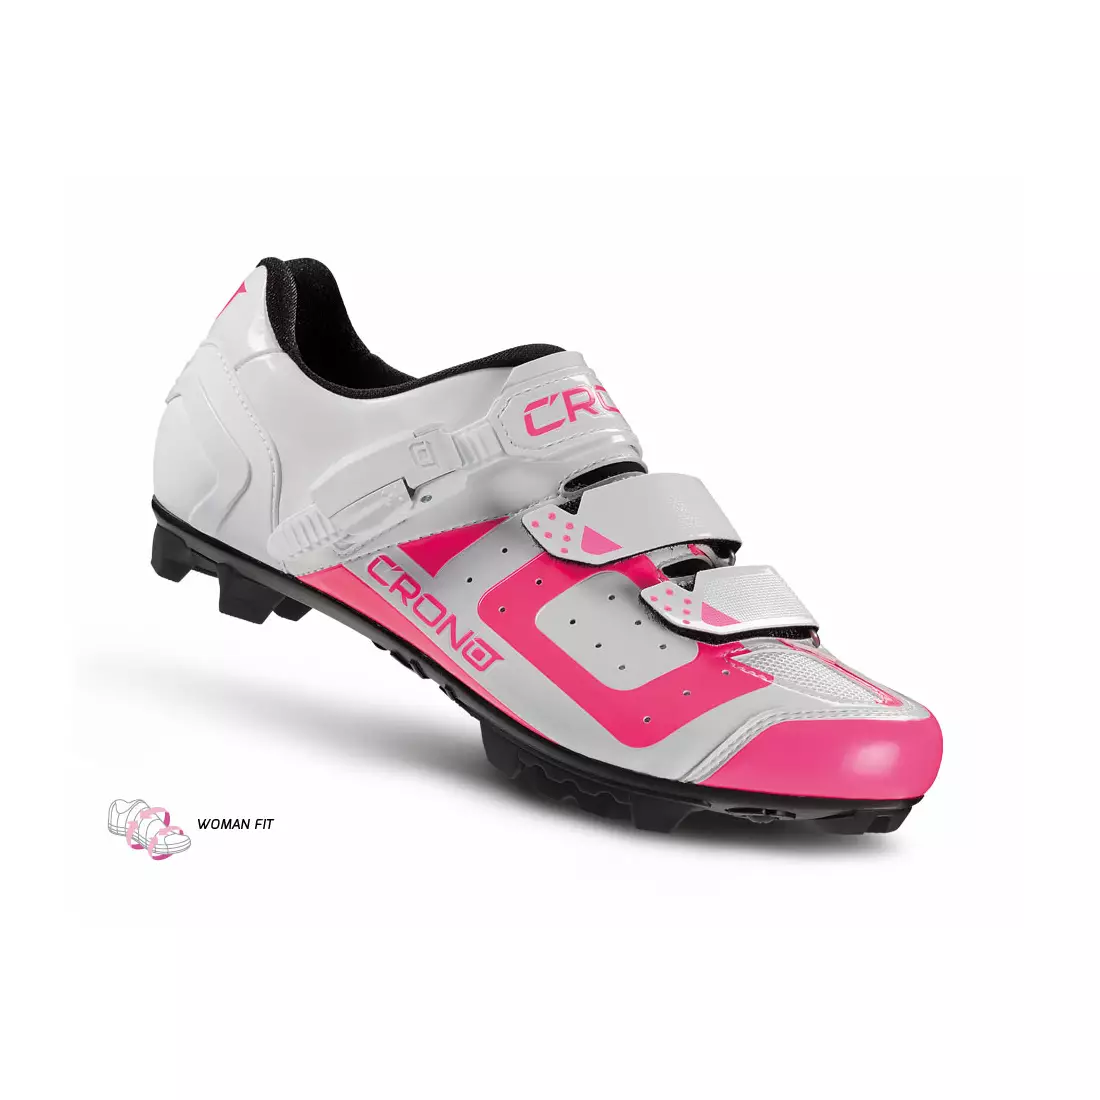 CRONO CX3 nylon női MTB kerékpáros cipő, fehér és rózsaszín